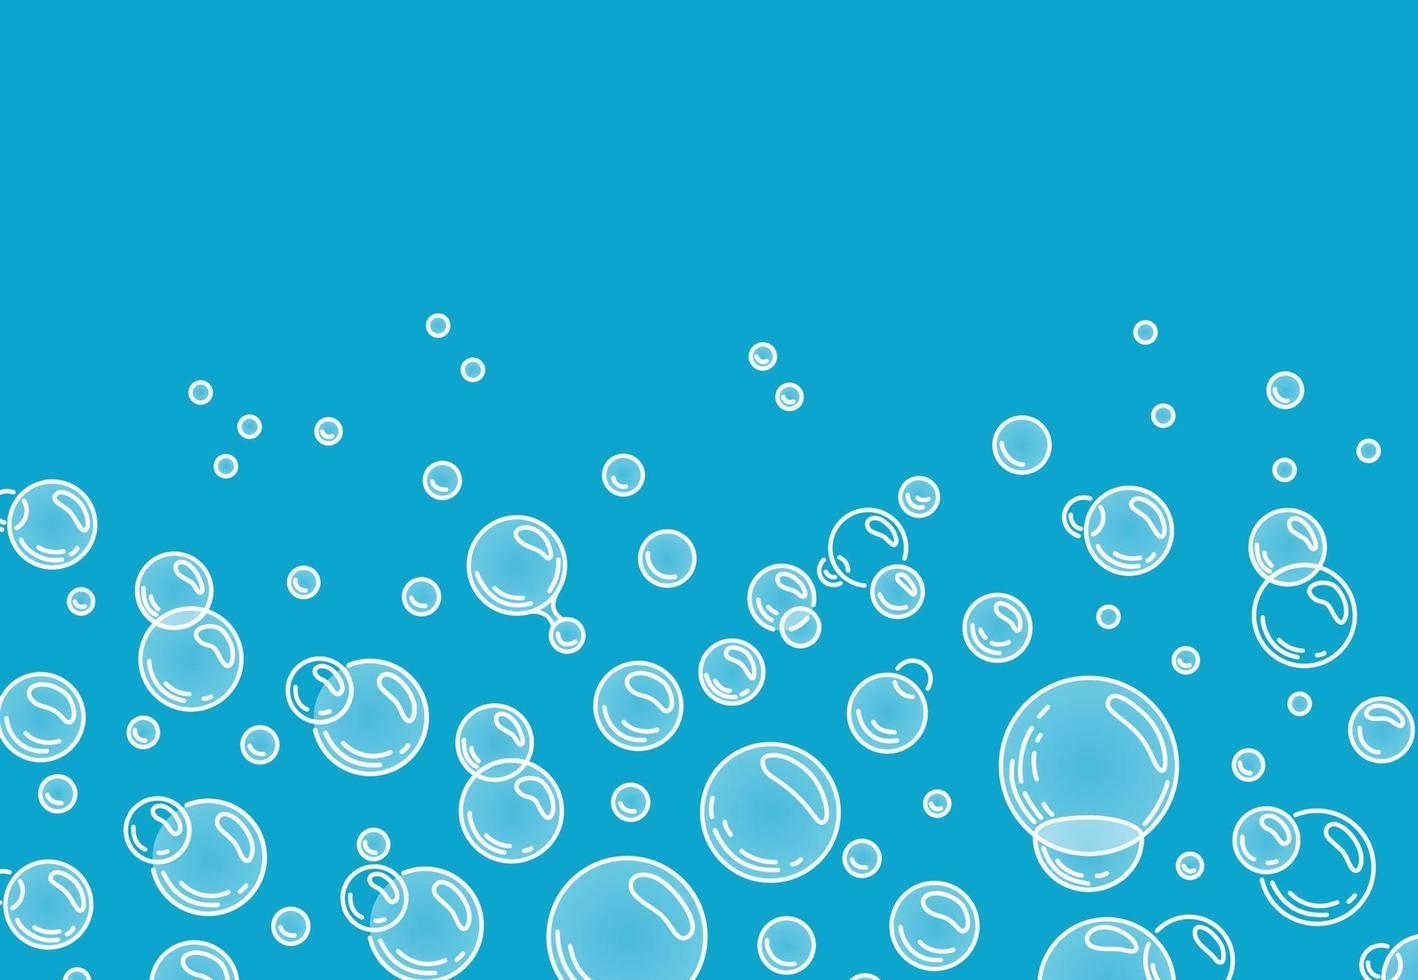 Bubbles of liquid soap, foam border. Soap foam background.  Vector cartoon illustration.